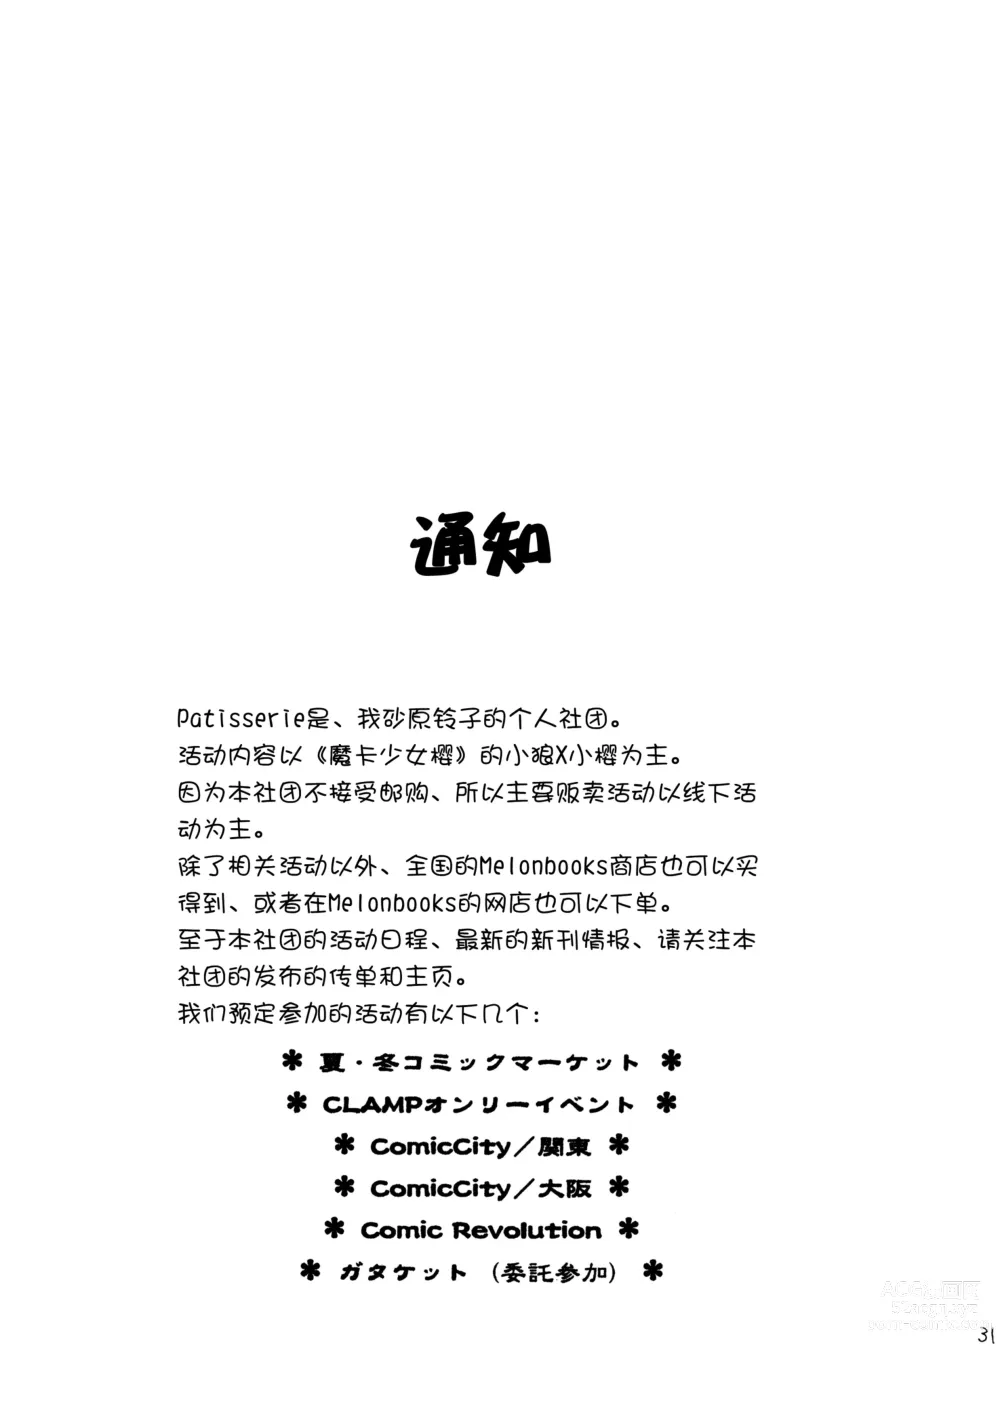 Page 31 of doujinshi Hitorijime